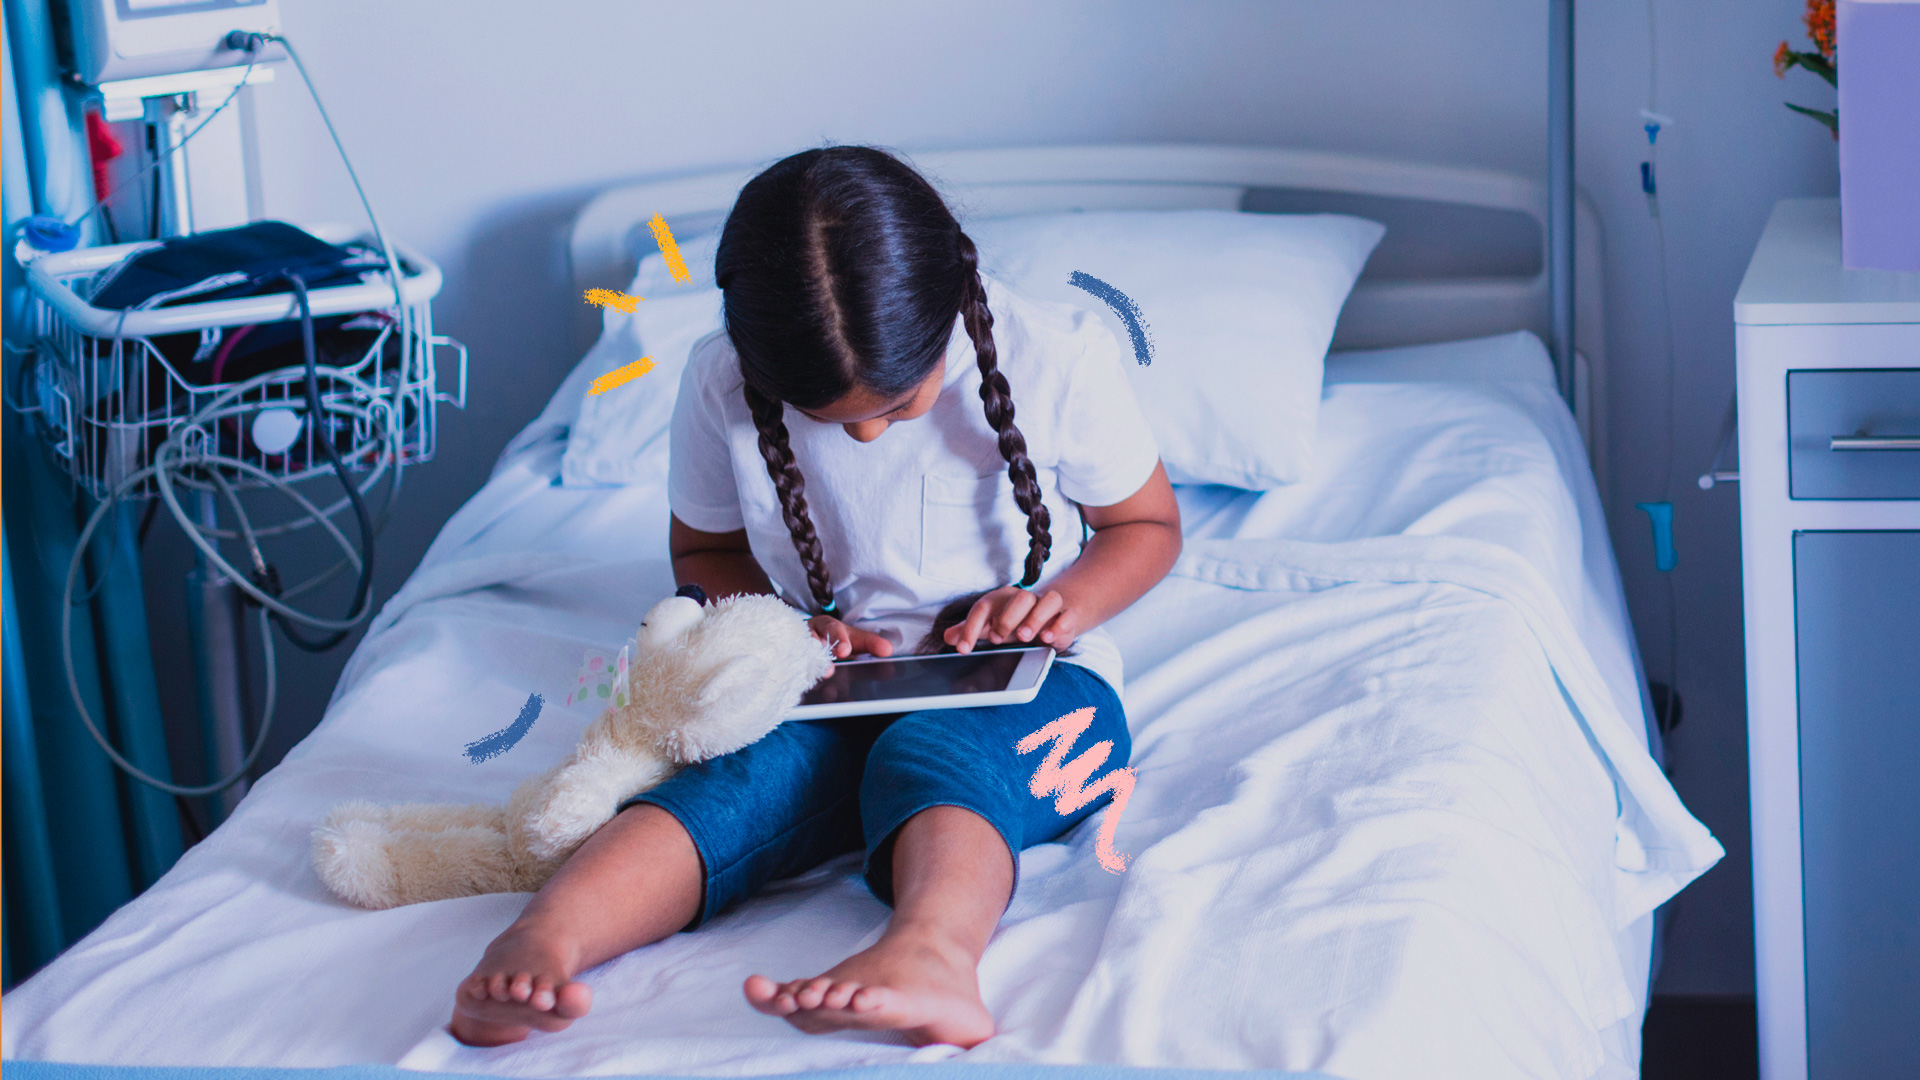 Imagem de uma menina com duas tranças, acompanhada de um ursinho de pelúcia. Ela está sentada em uma cama de hospital e apoia no colo um tablet onde deve acessar histórias infantis.